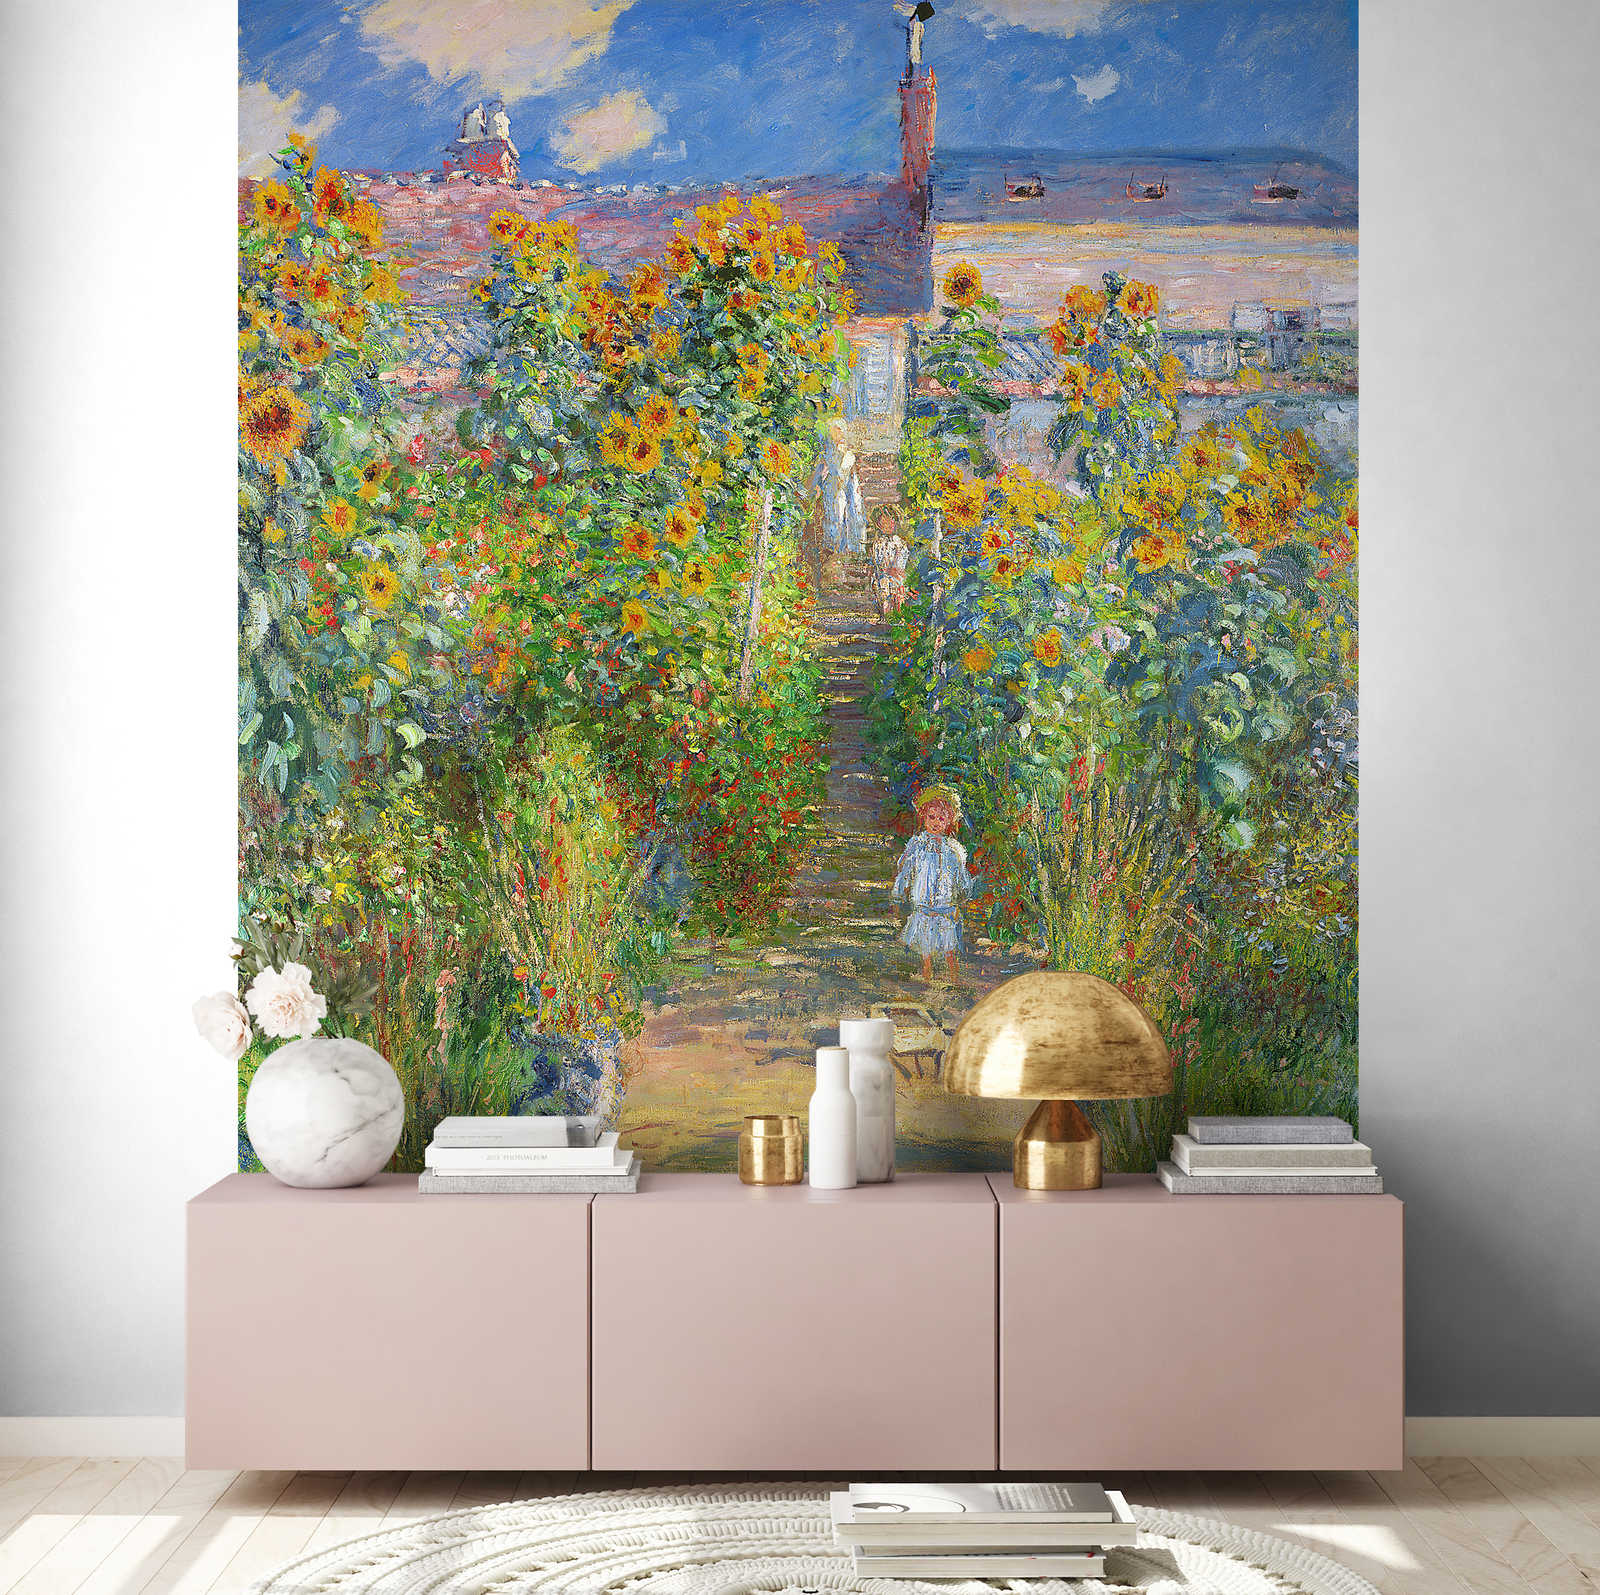             Papier peint panoramique "Le jardin de l'artiste à Vétheuil" de Claude Monet
        